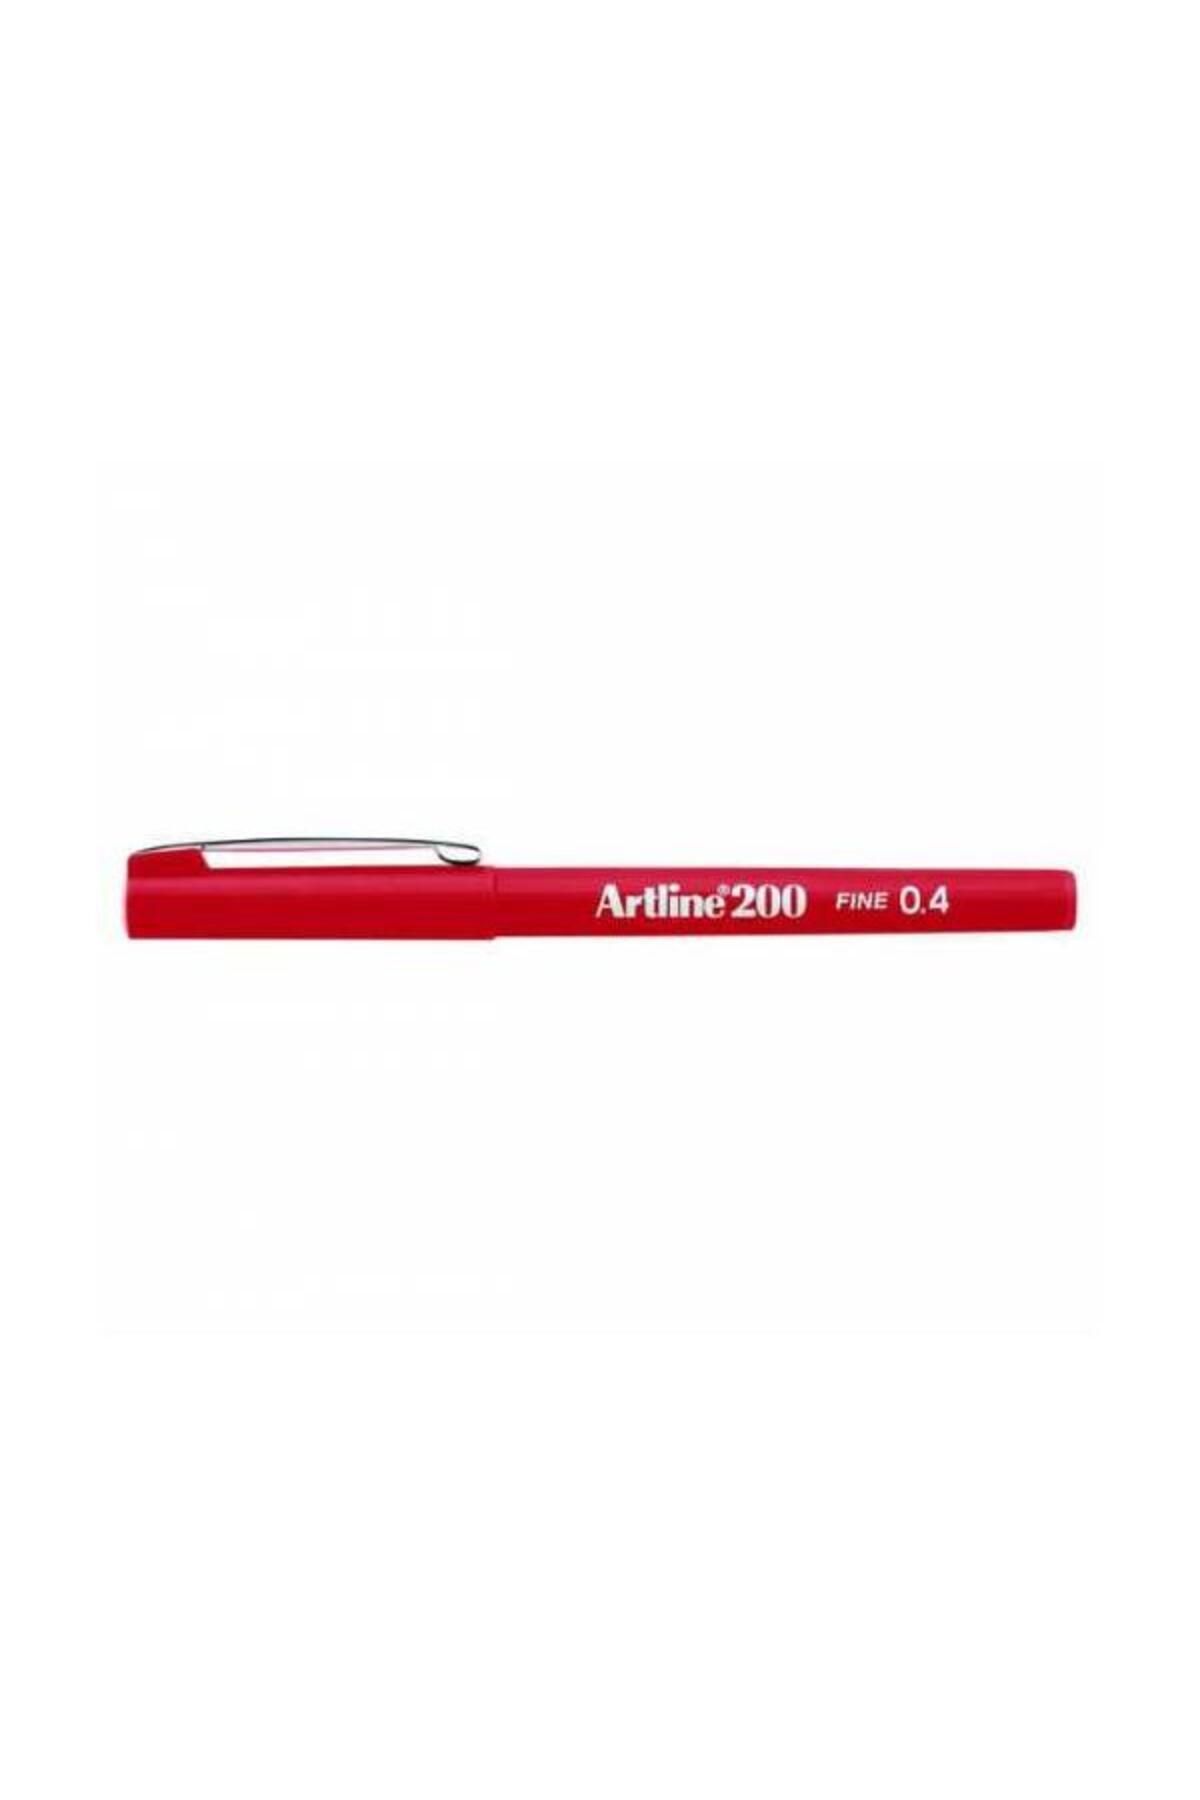 artline Fineliner 0.4 Mm Kırmızı Ek 200n 12'li Paket /